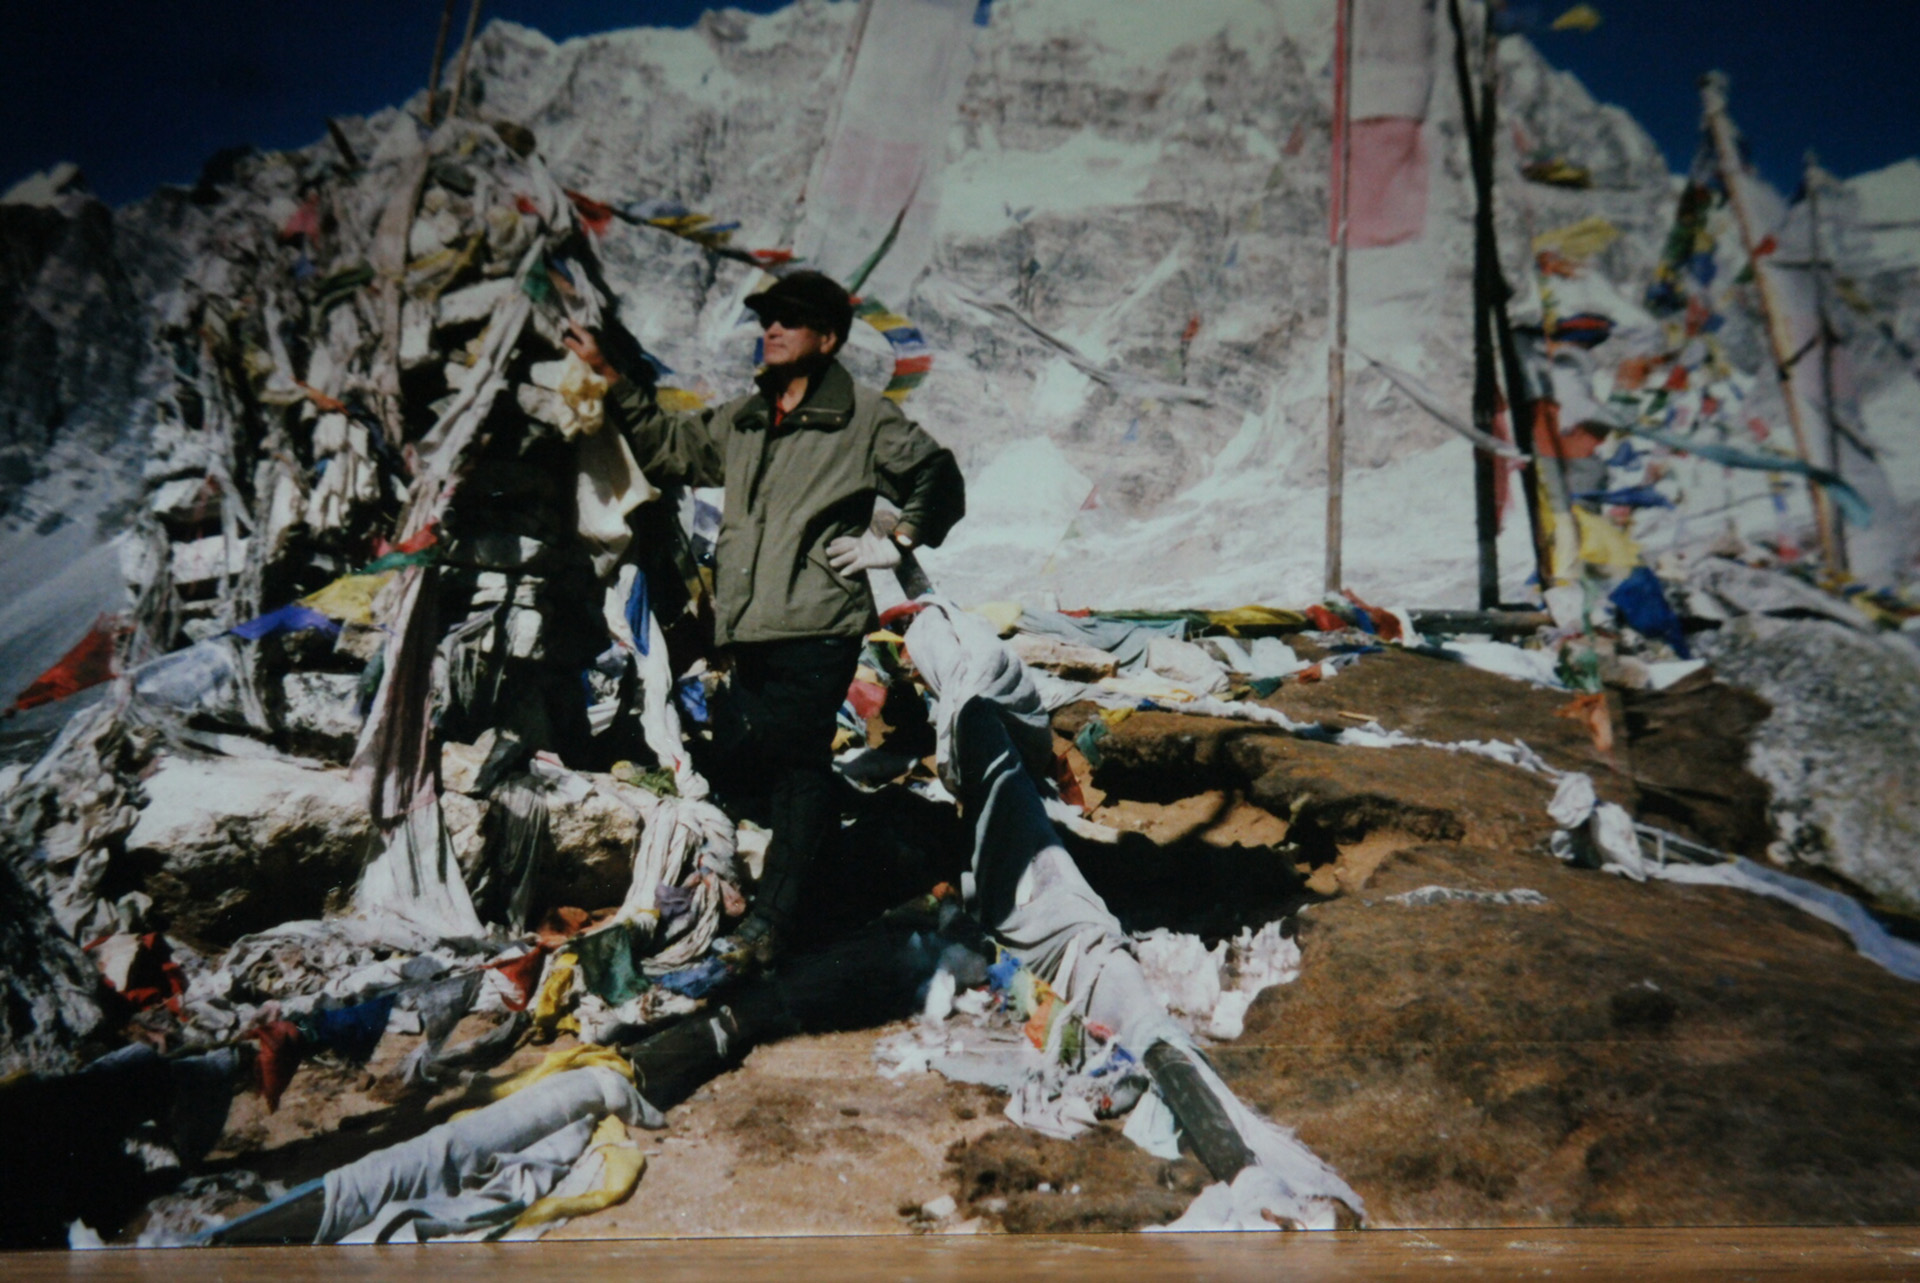 ▲2008년 1월 14일 히말라야 랑탕 체르고리 봉(4984m)에서 찍은 기념 사진